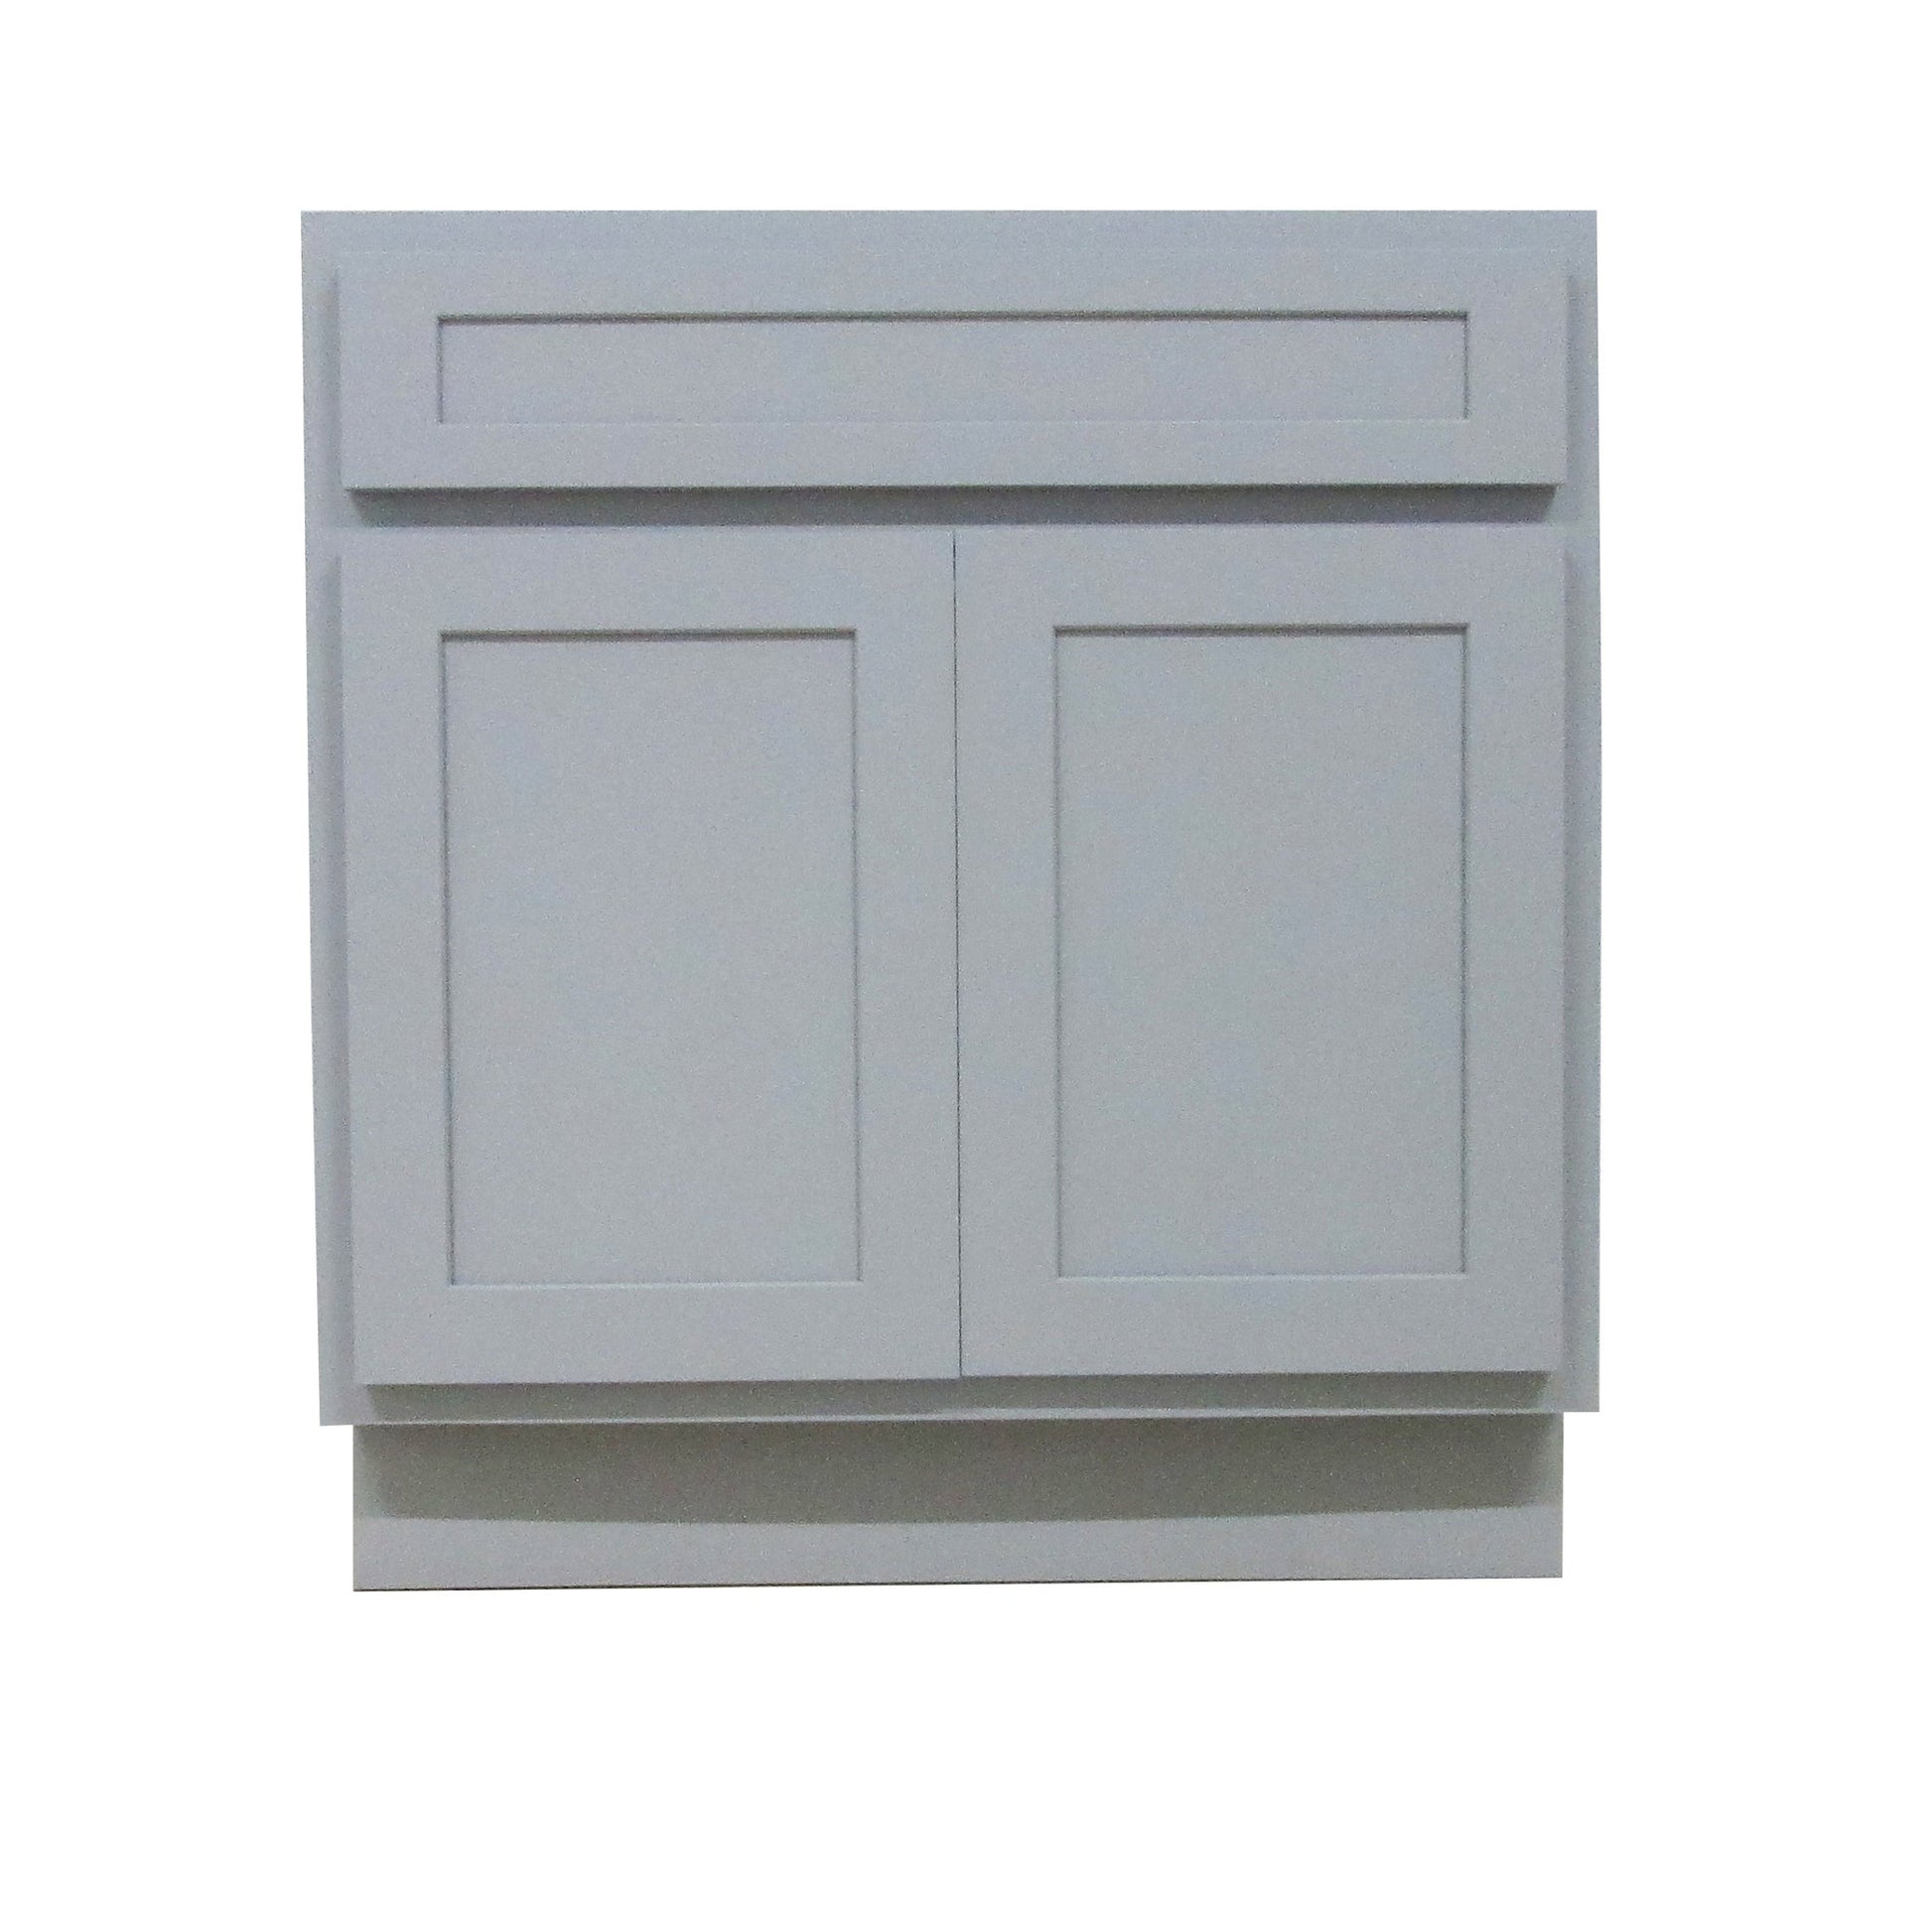 Vanity Art 30" Gray Freestanding Solid Wood Vanity Cabinet With Double Soft Closing Doors